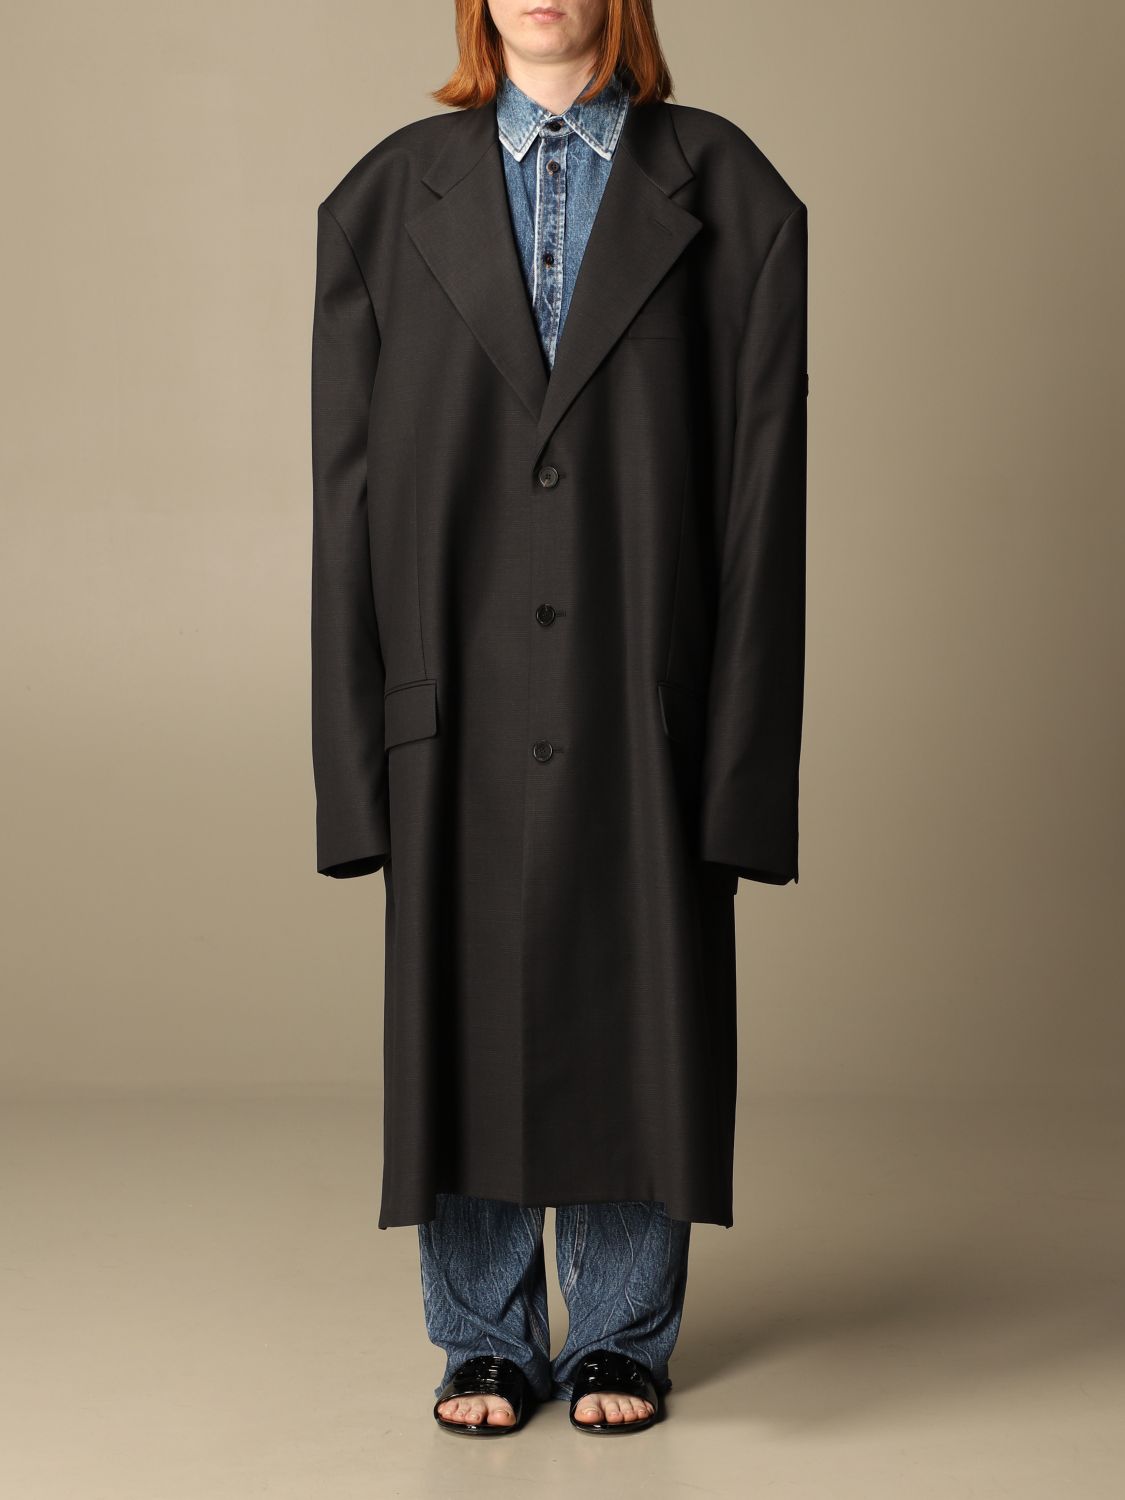 Blive opmærksom værksted koncept BALENCIAGA: Hybrid over coat | Coat Balenciaga Women Black | Coat Balenciaga  658924 TKT08 GIGLIO.COM